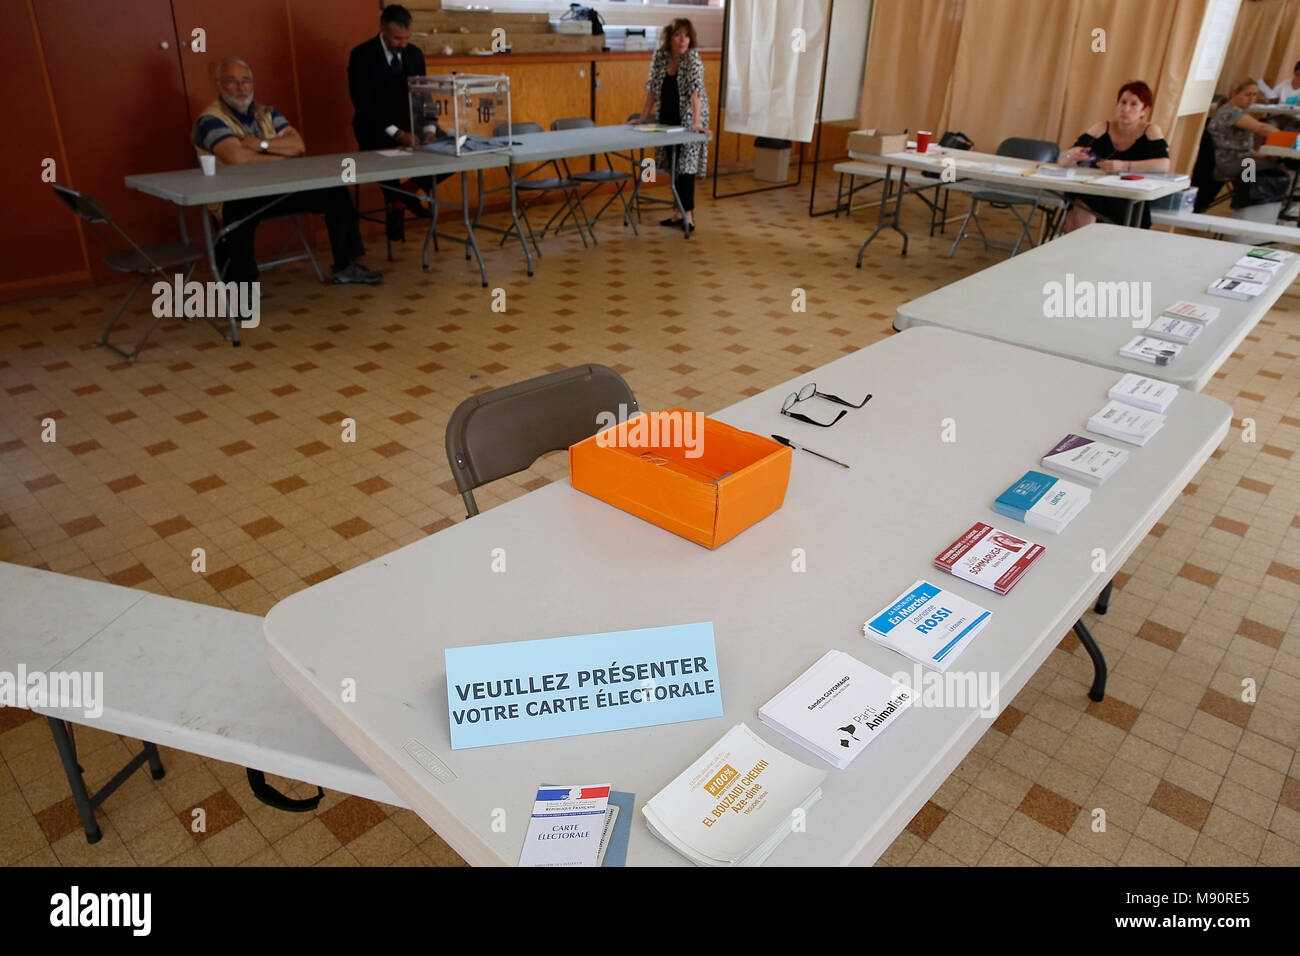 Stazione di polling in Francia : dell'elettore card e schede elettorali. Montrouge, Francia. Foto Stock